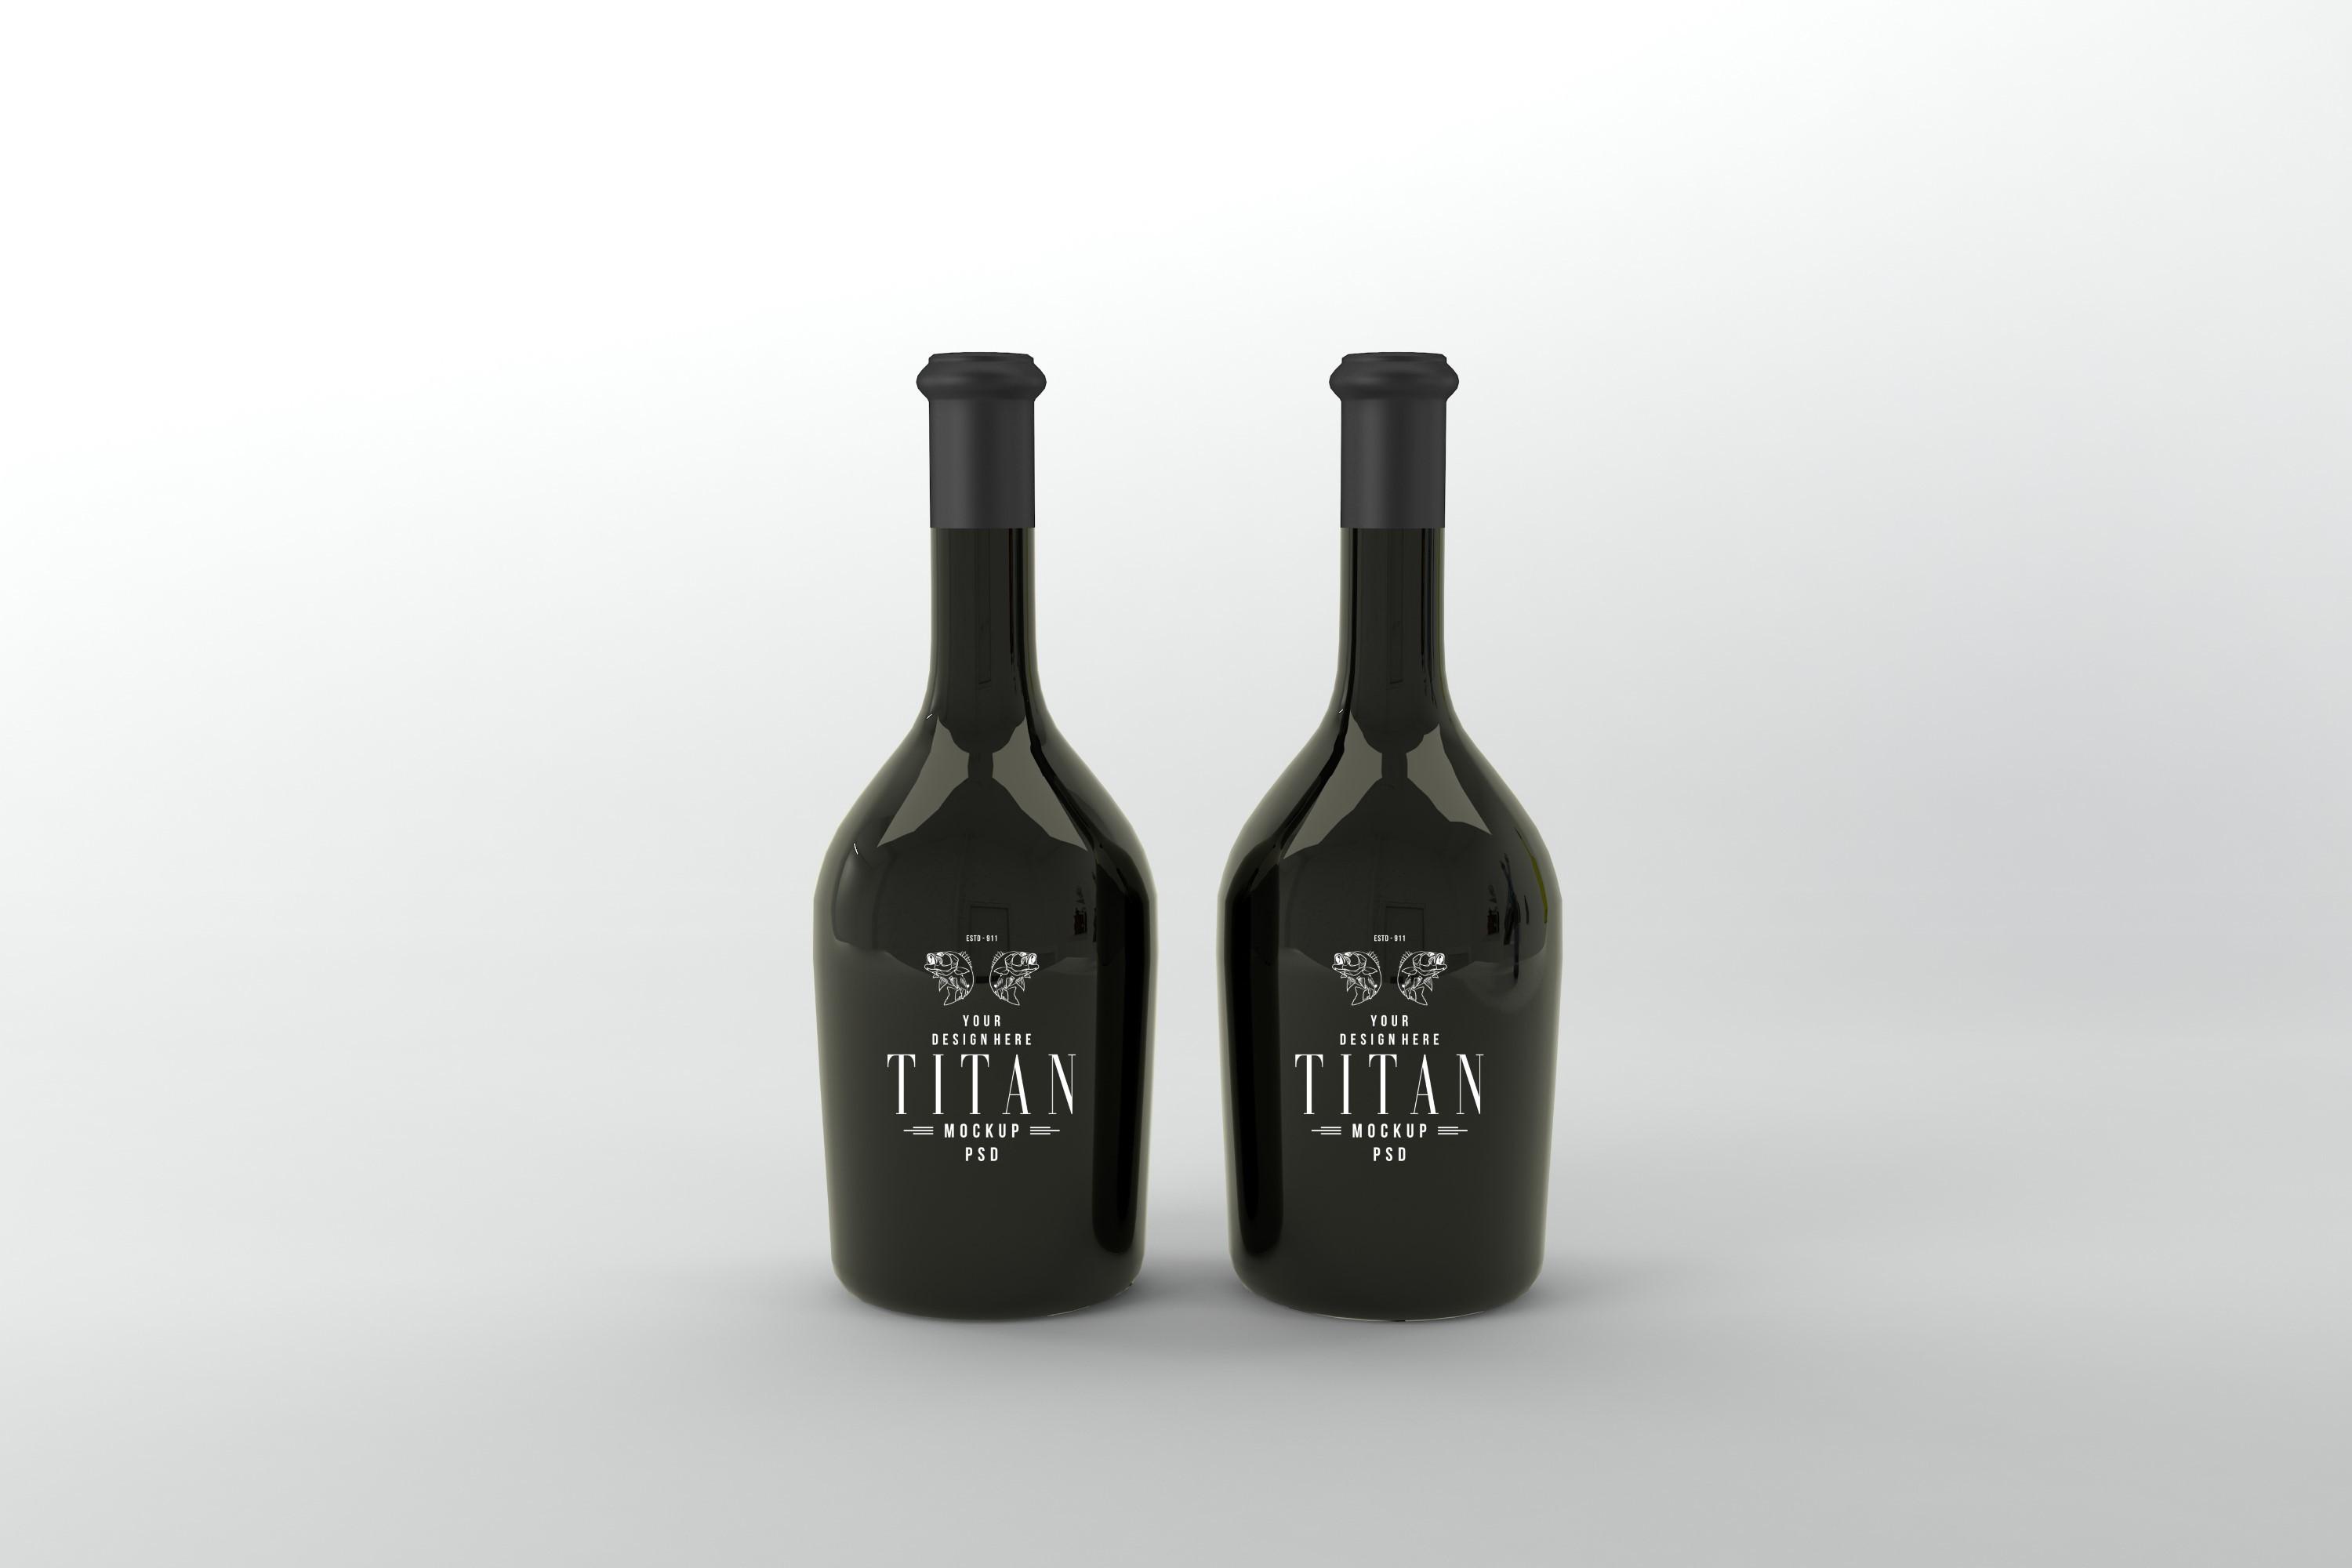 Titan Two Bottle Mockup